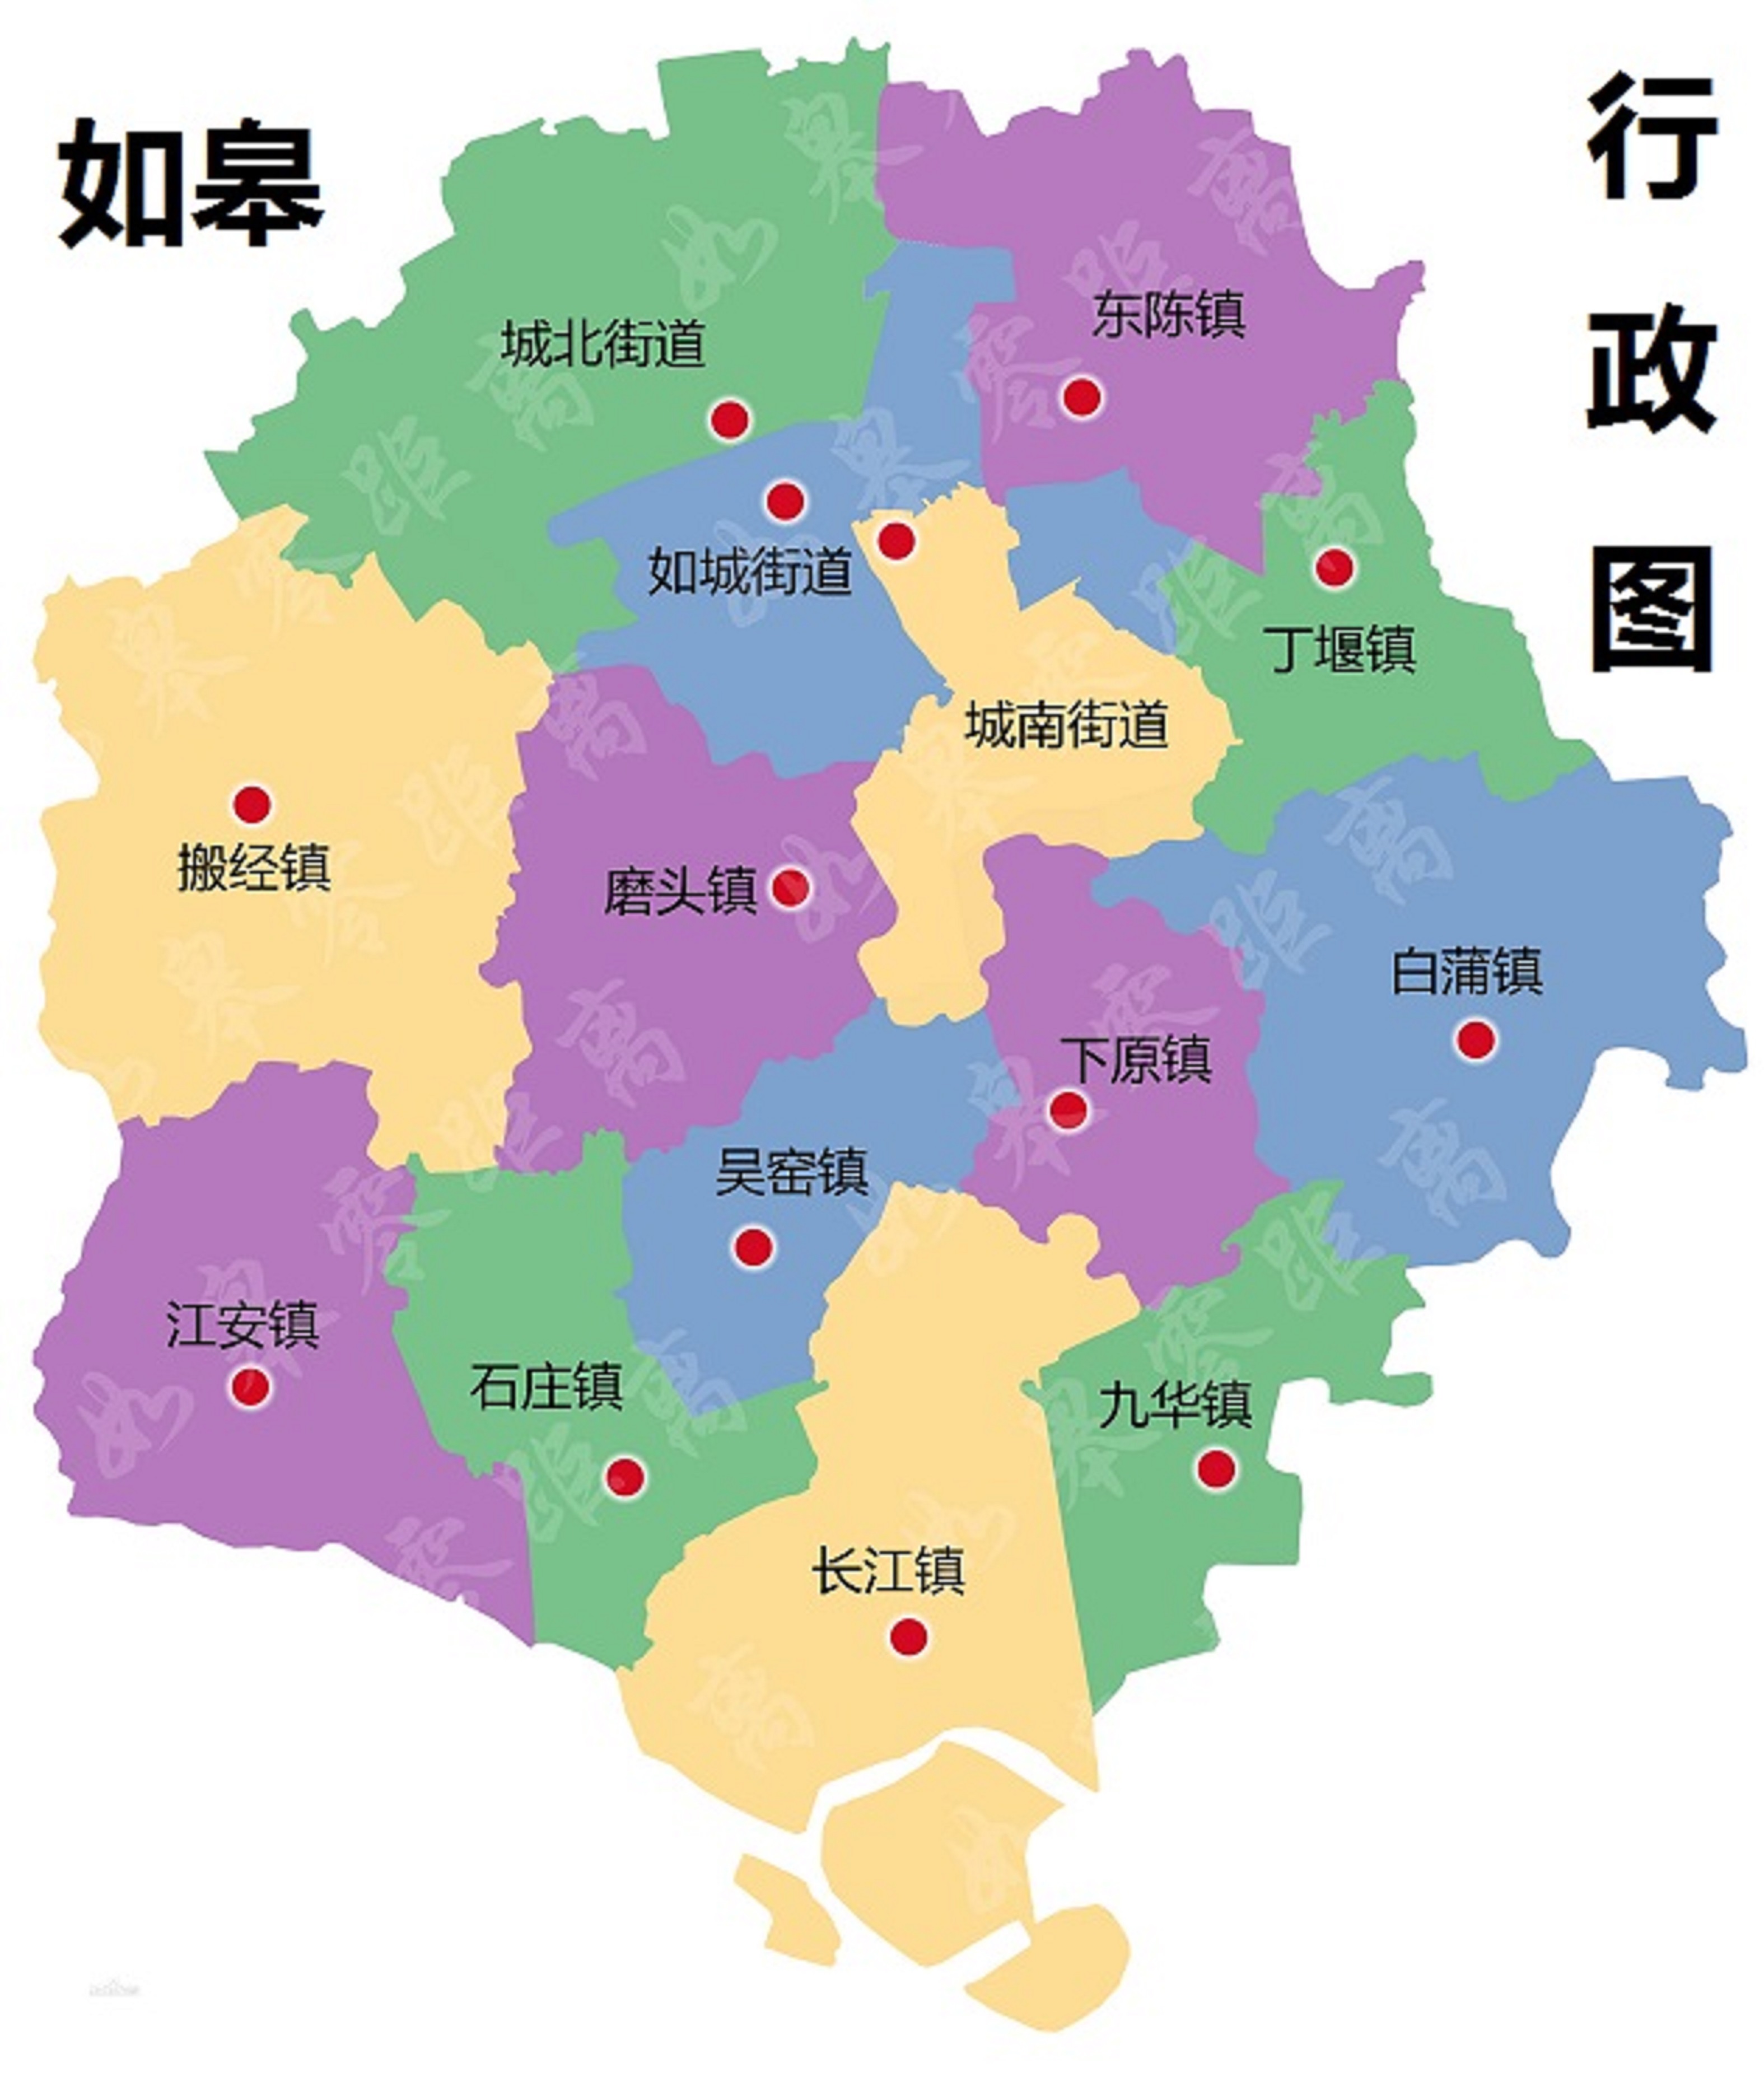 江苏省行政区划_江苏地图全图 - 随意贴